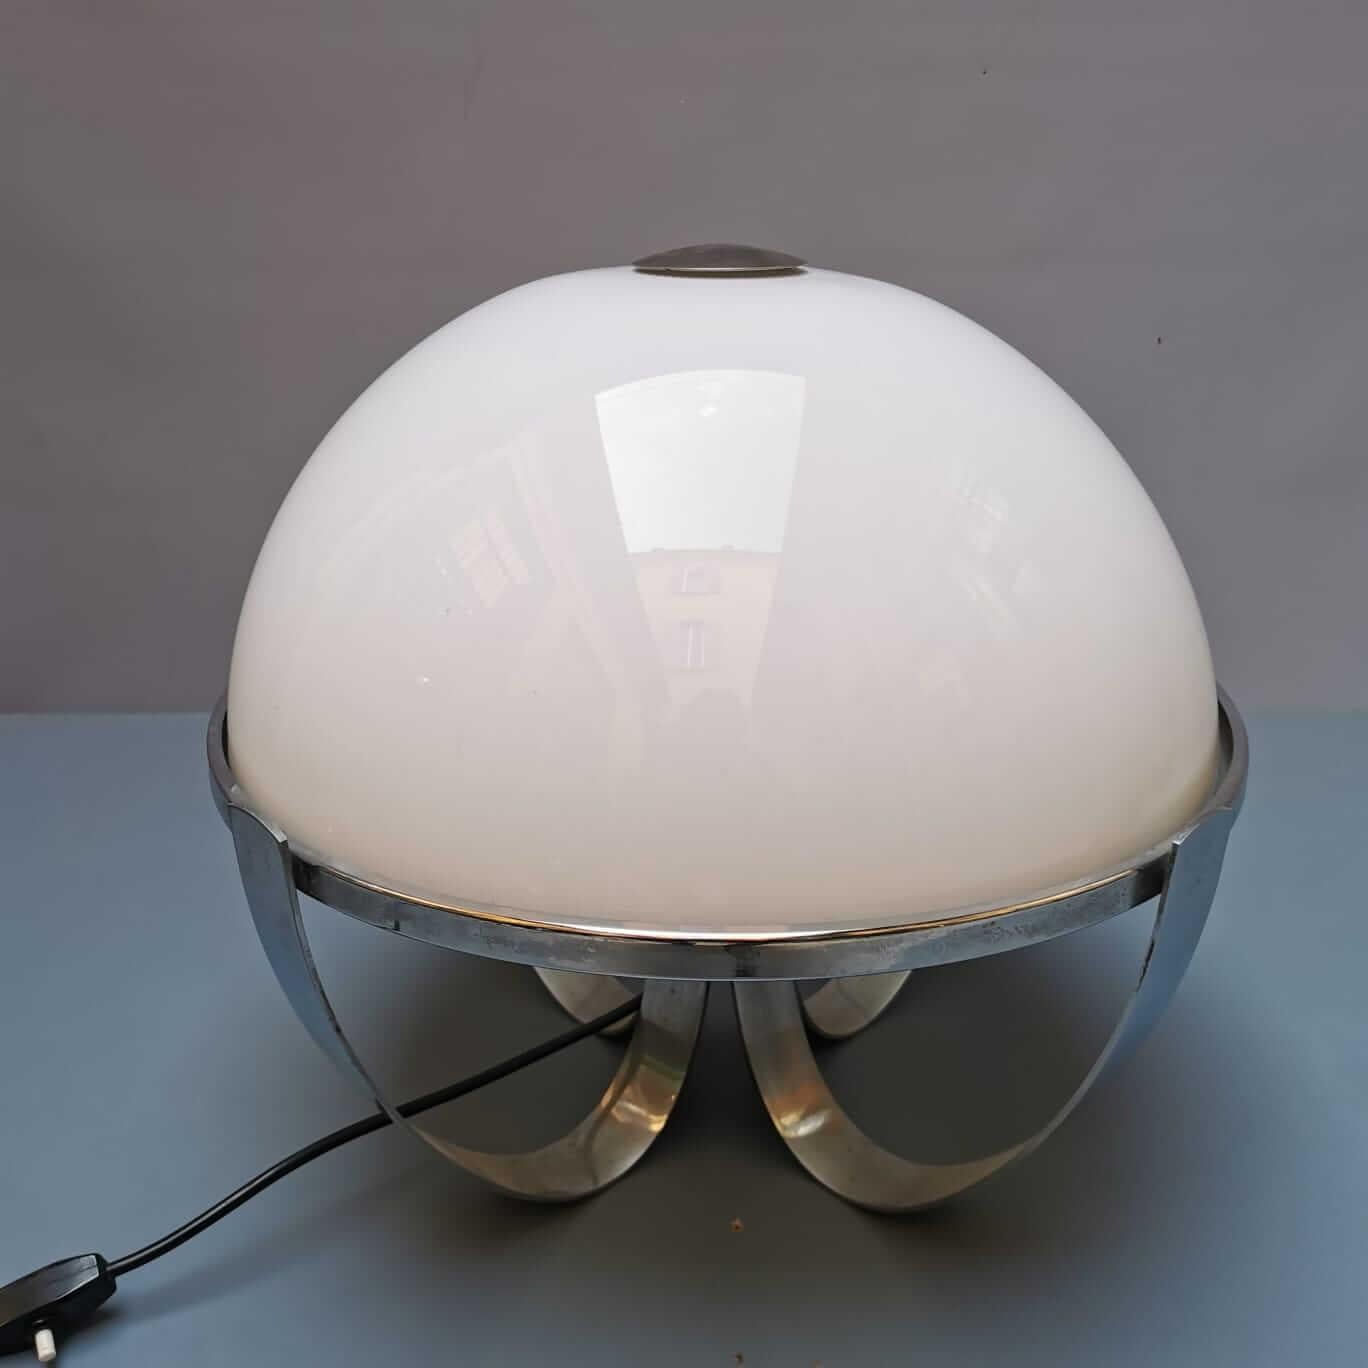 Une lampe de l'ère spatiale en métal et en plastique avec un design clair des années 1970. Elle ressemble à la forme de la pieuvre et pourrait être un objet parfait pour une table ou un buffet. La lampe est en bon état général mais peut présenter